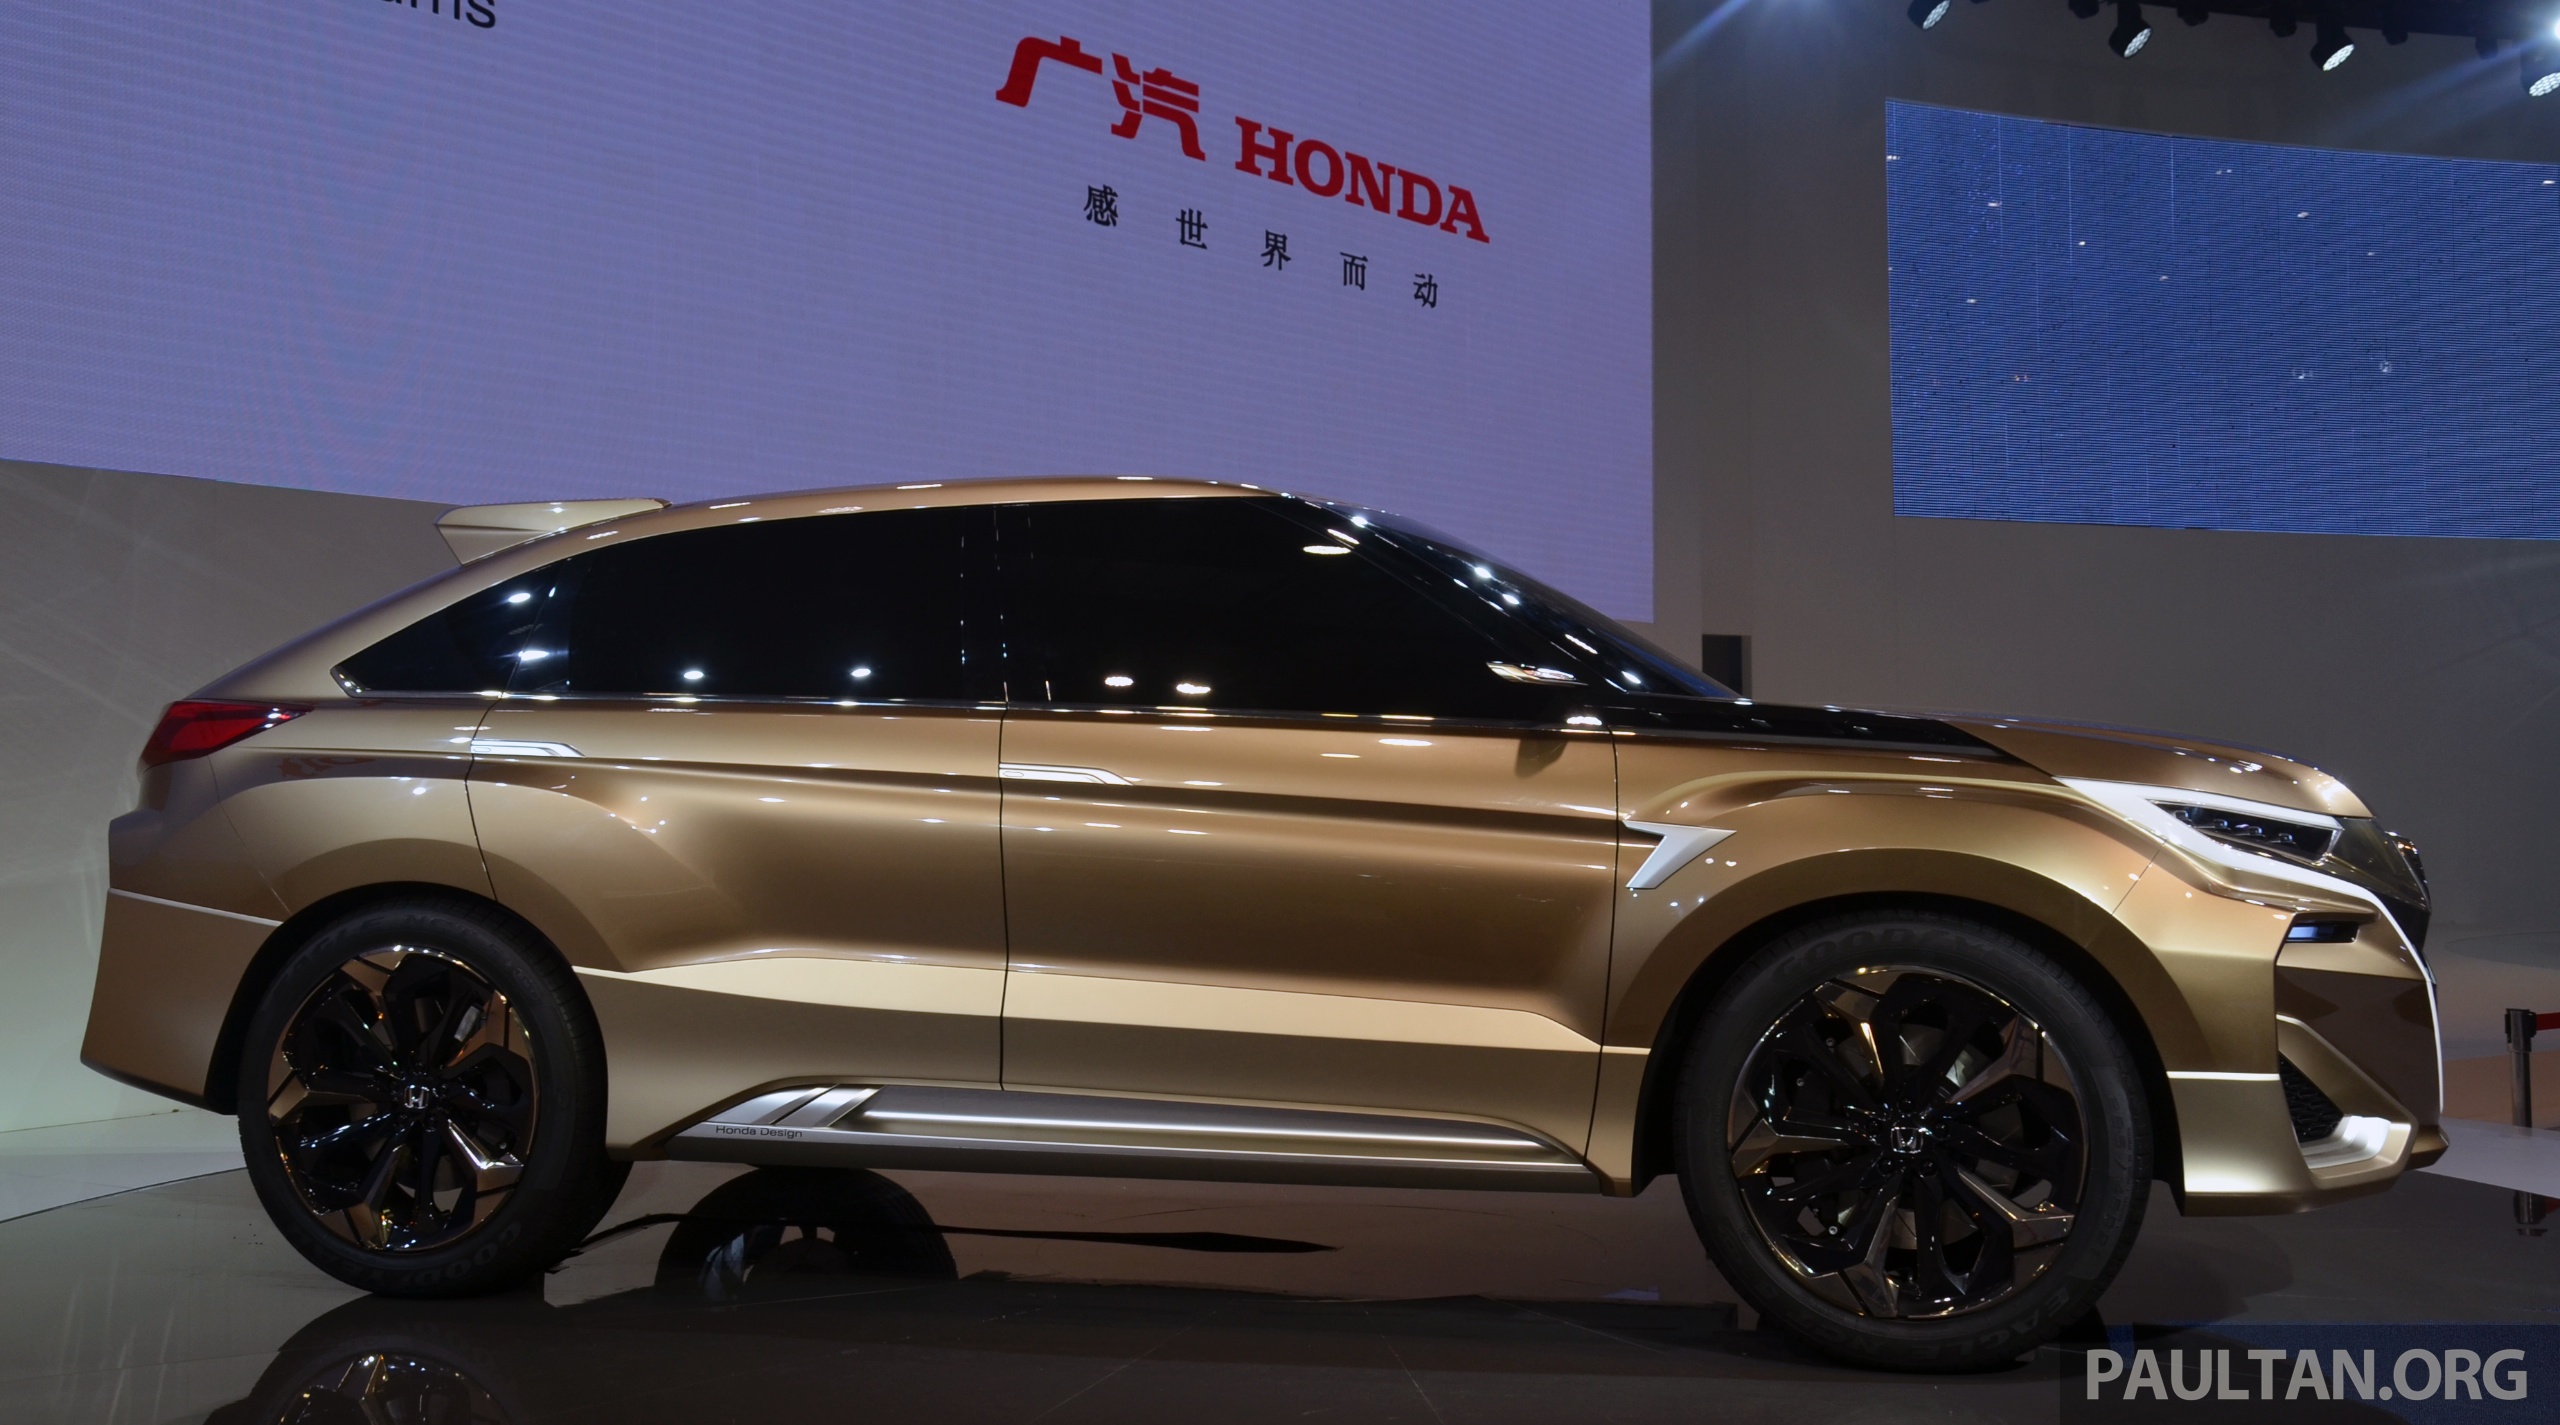 Shanghai 2015: Honda Concept D previews new SUV Paul Tan ...